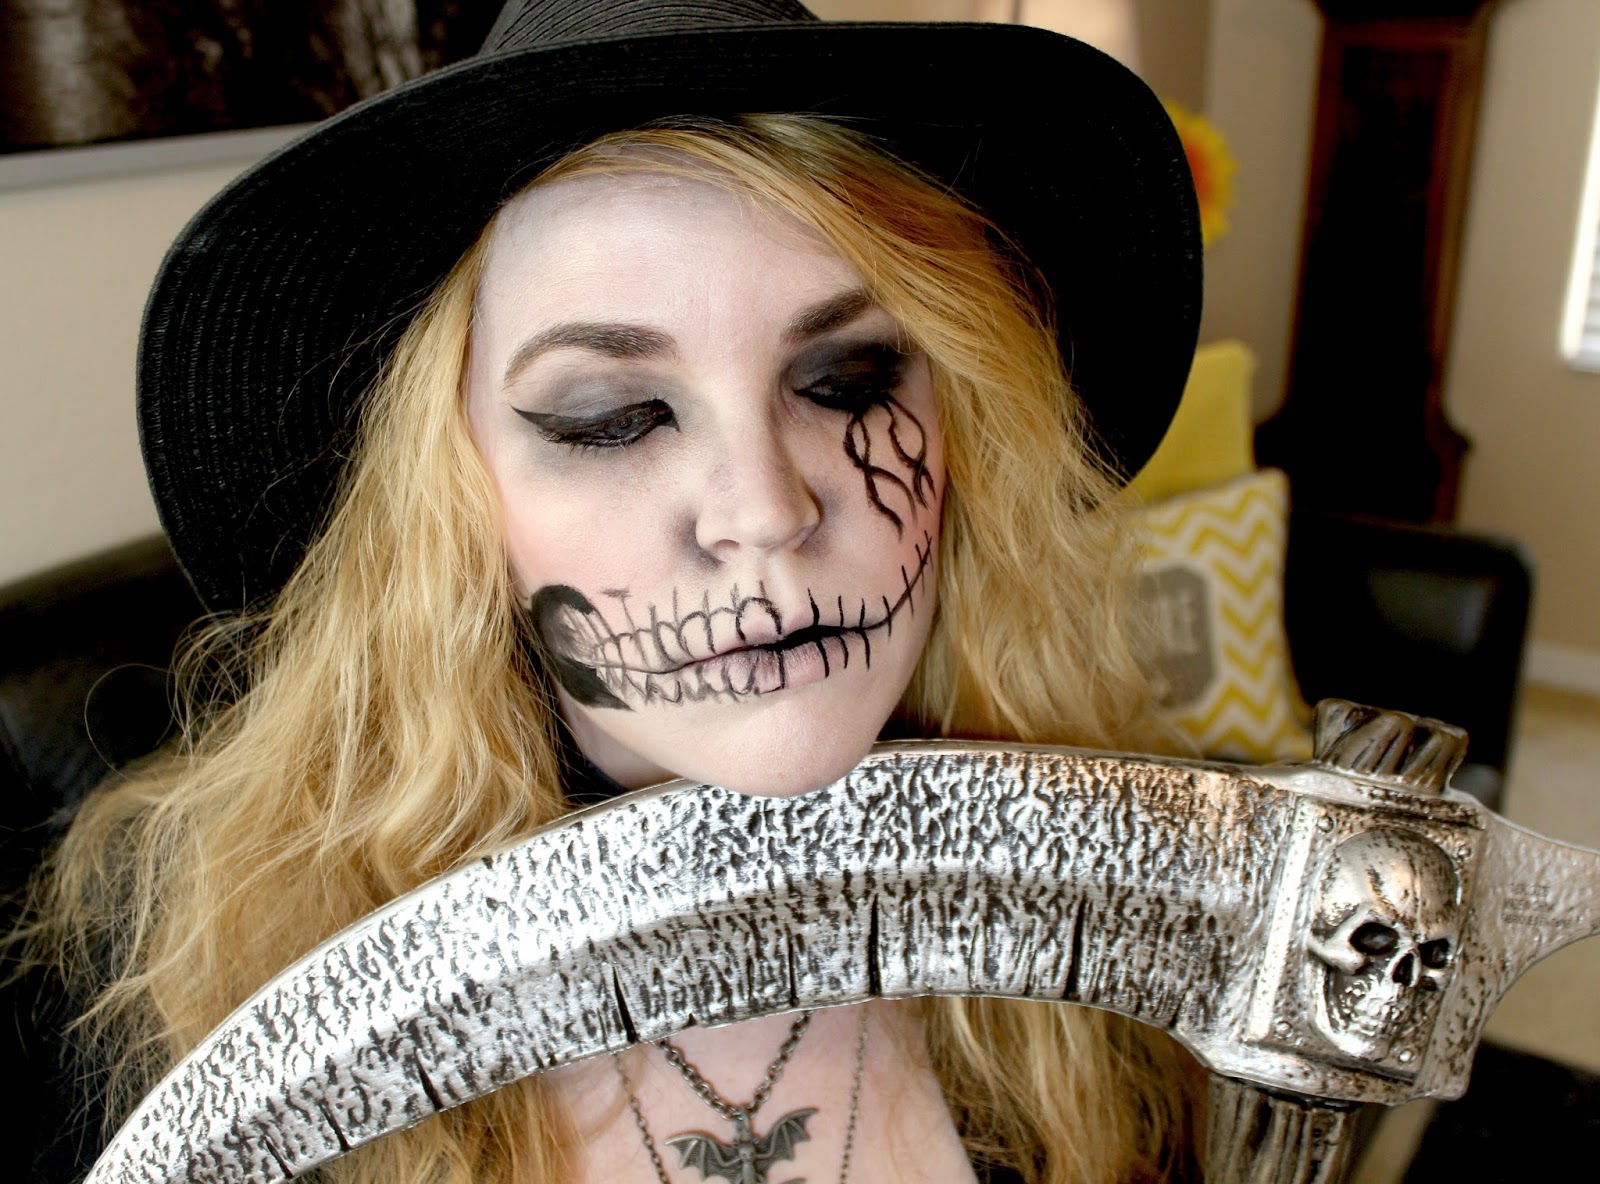 Grim Reaper Halloween Makeup and Costume.